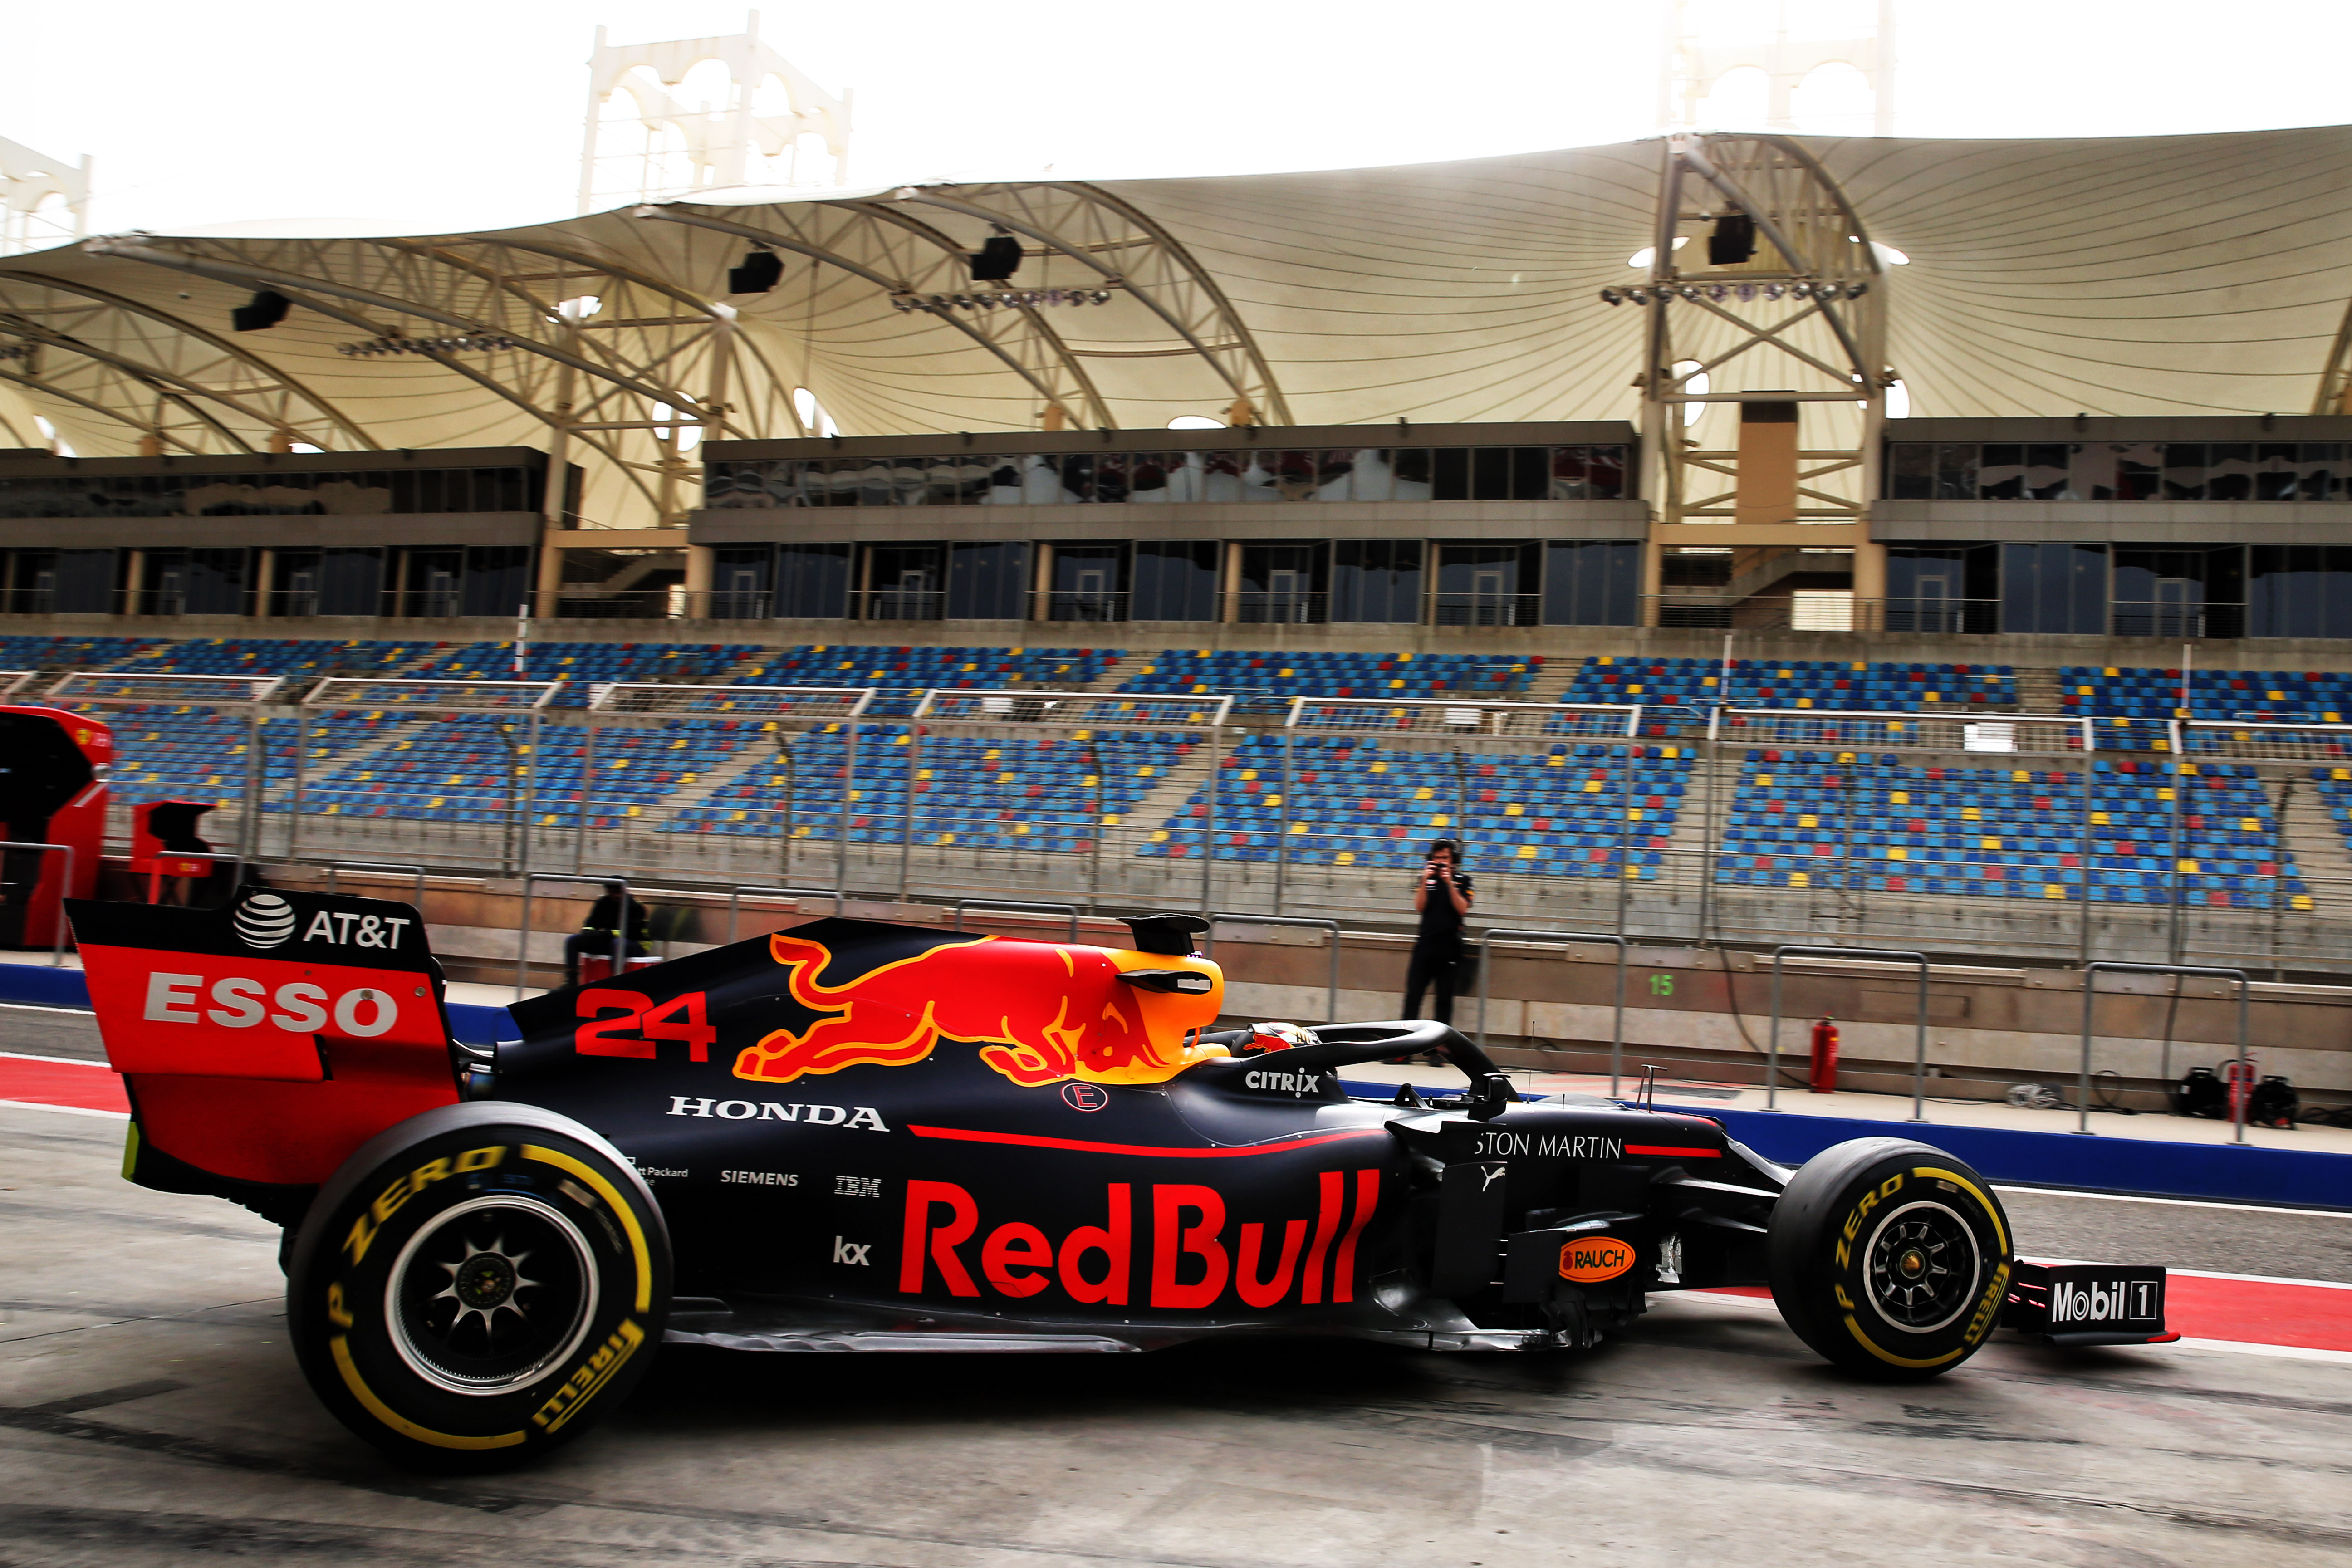 Motor Racing Formula One World Championship In Season Testing Wednesday Sakhir, Bahrain